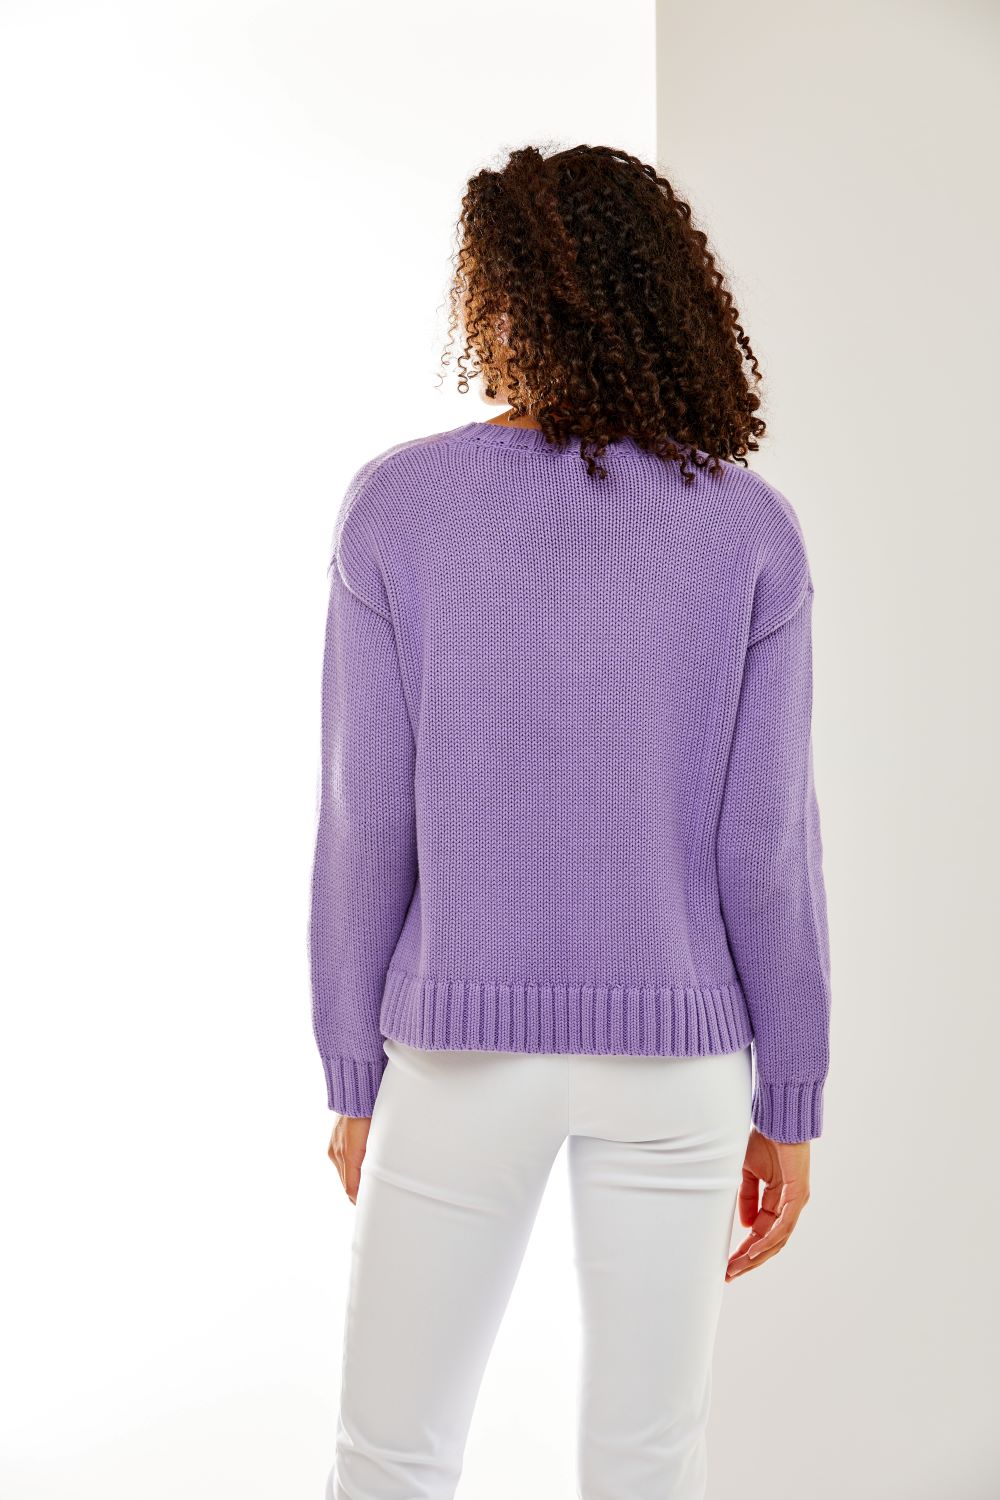 Woman in purple sweater